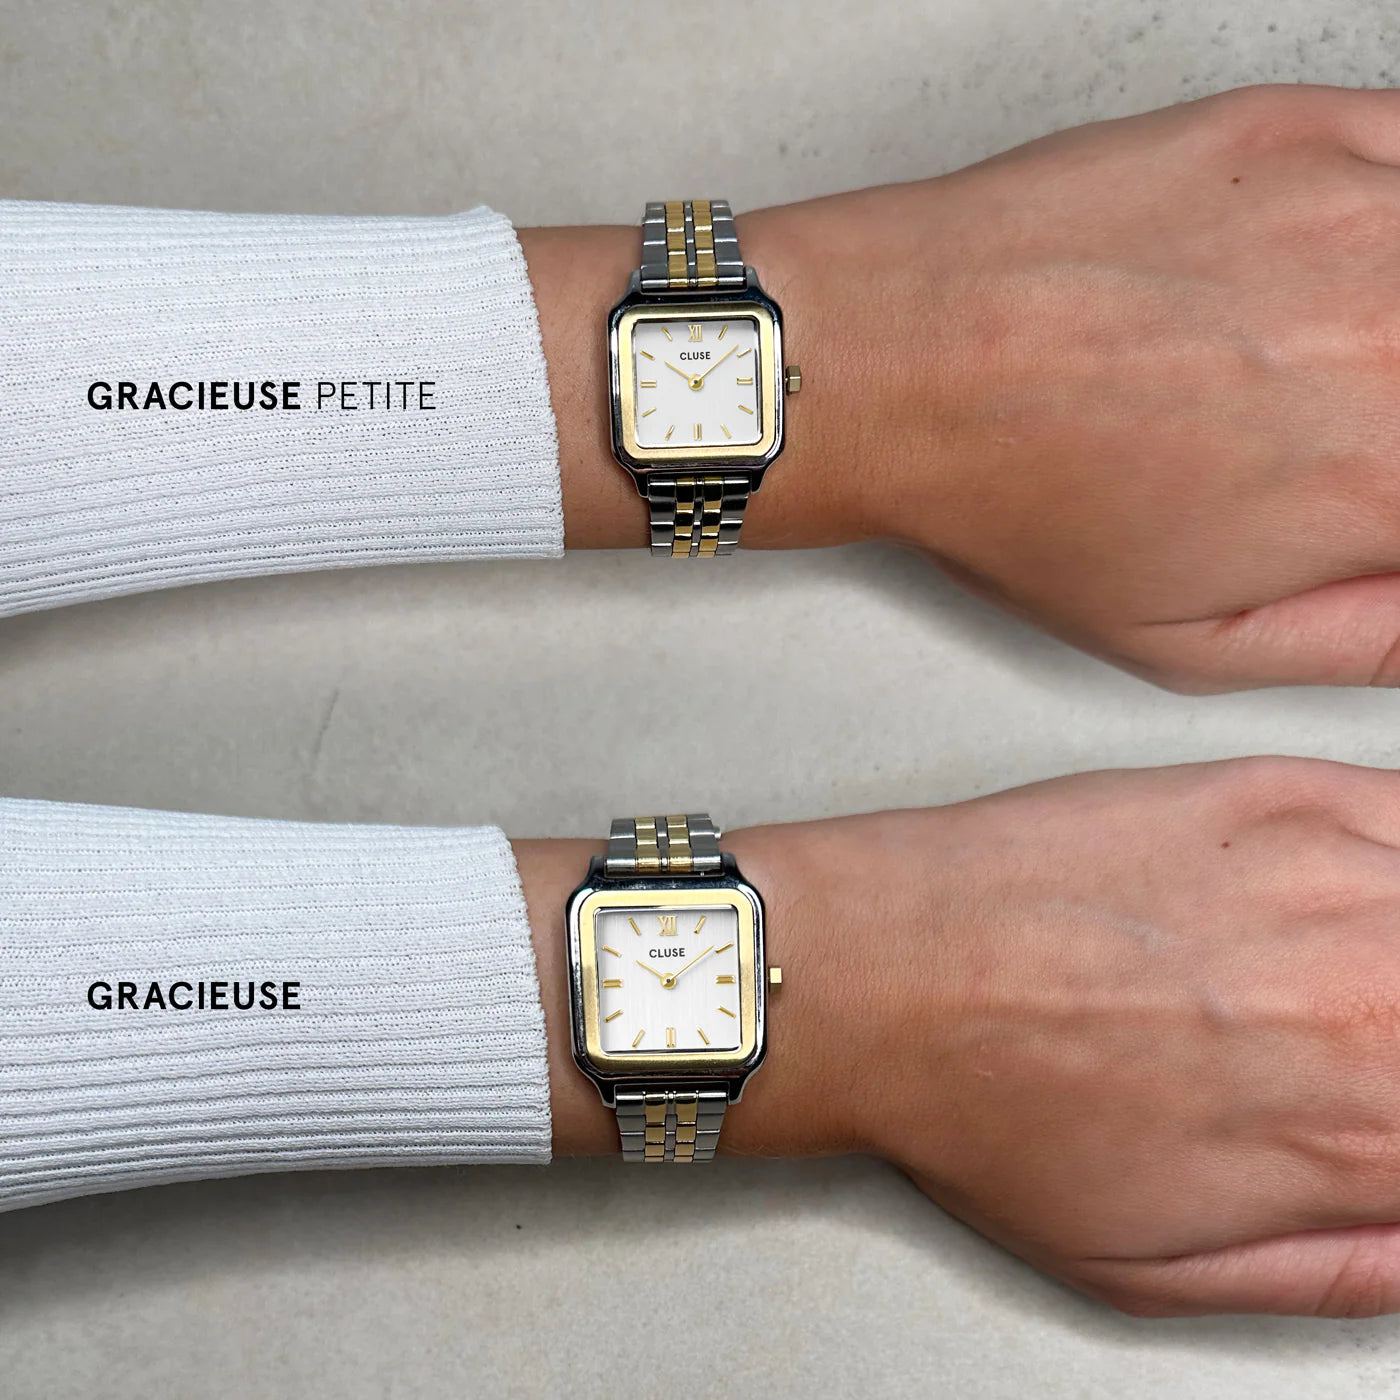 Vergleich der Gracieuse Uhr mit der Gracieuse Petite Uhr von Cluse